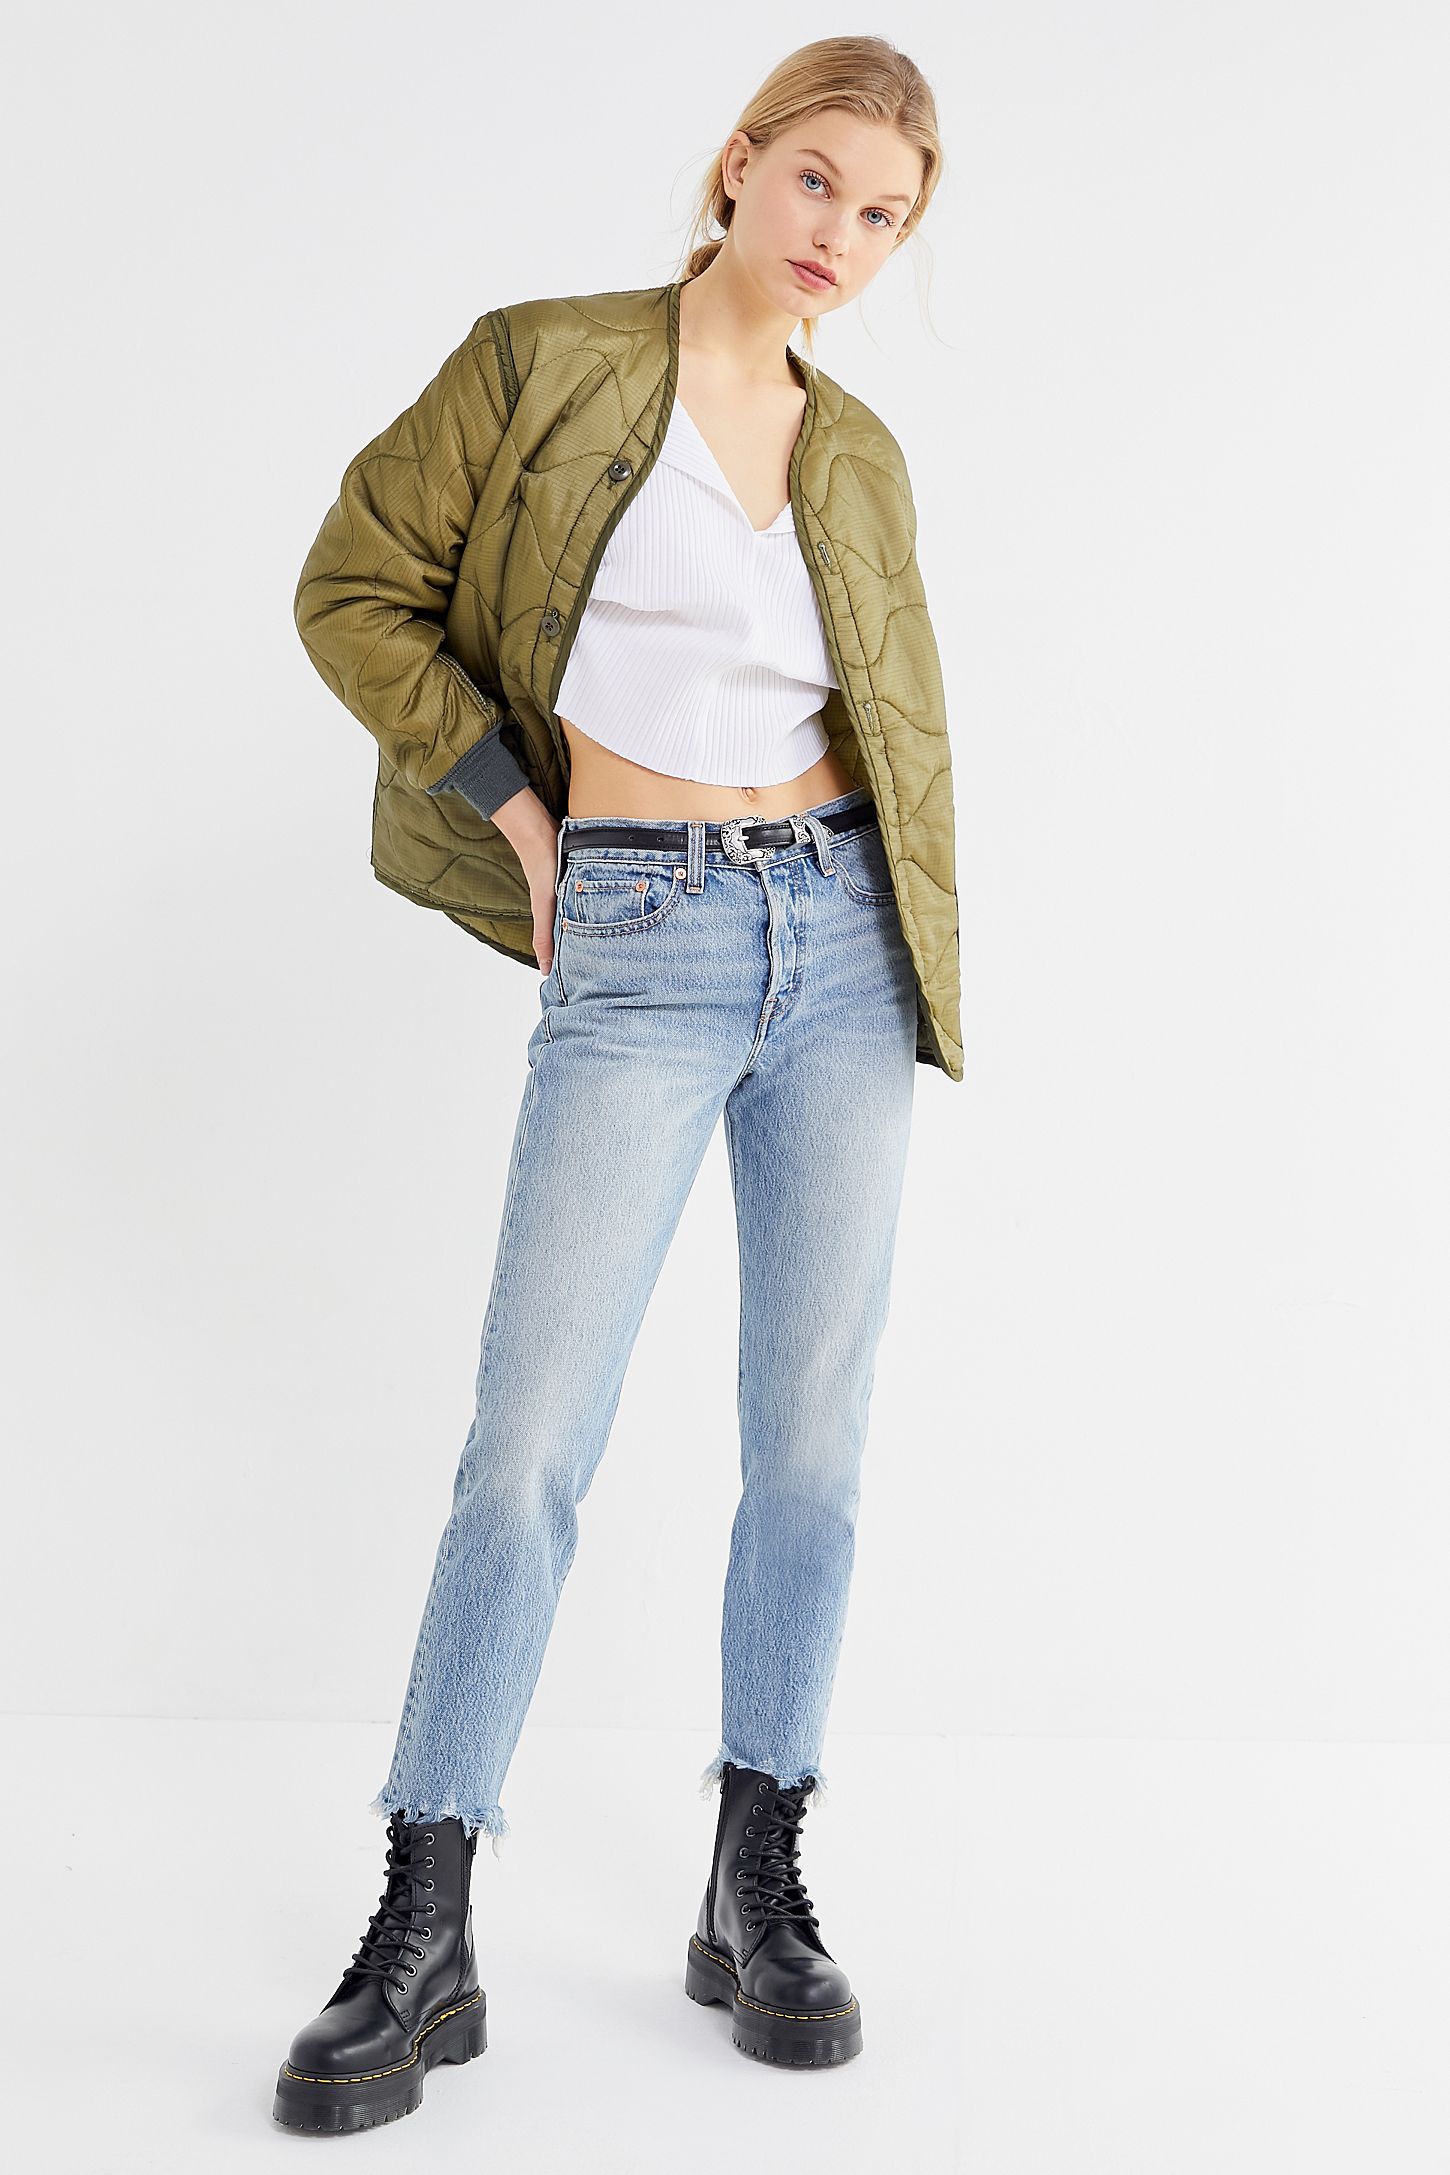 Levis Sale 2019 Womens Jeans & More Deals